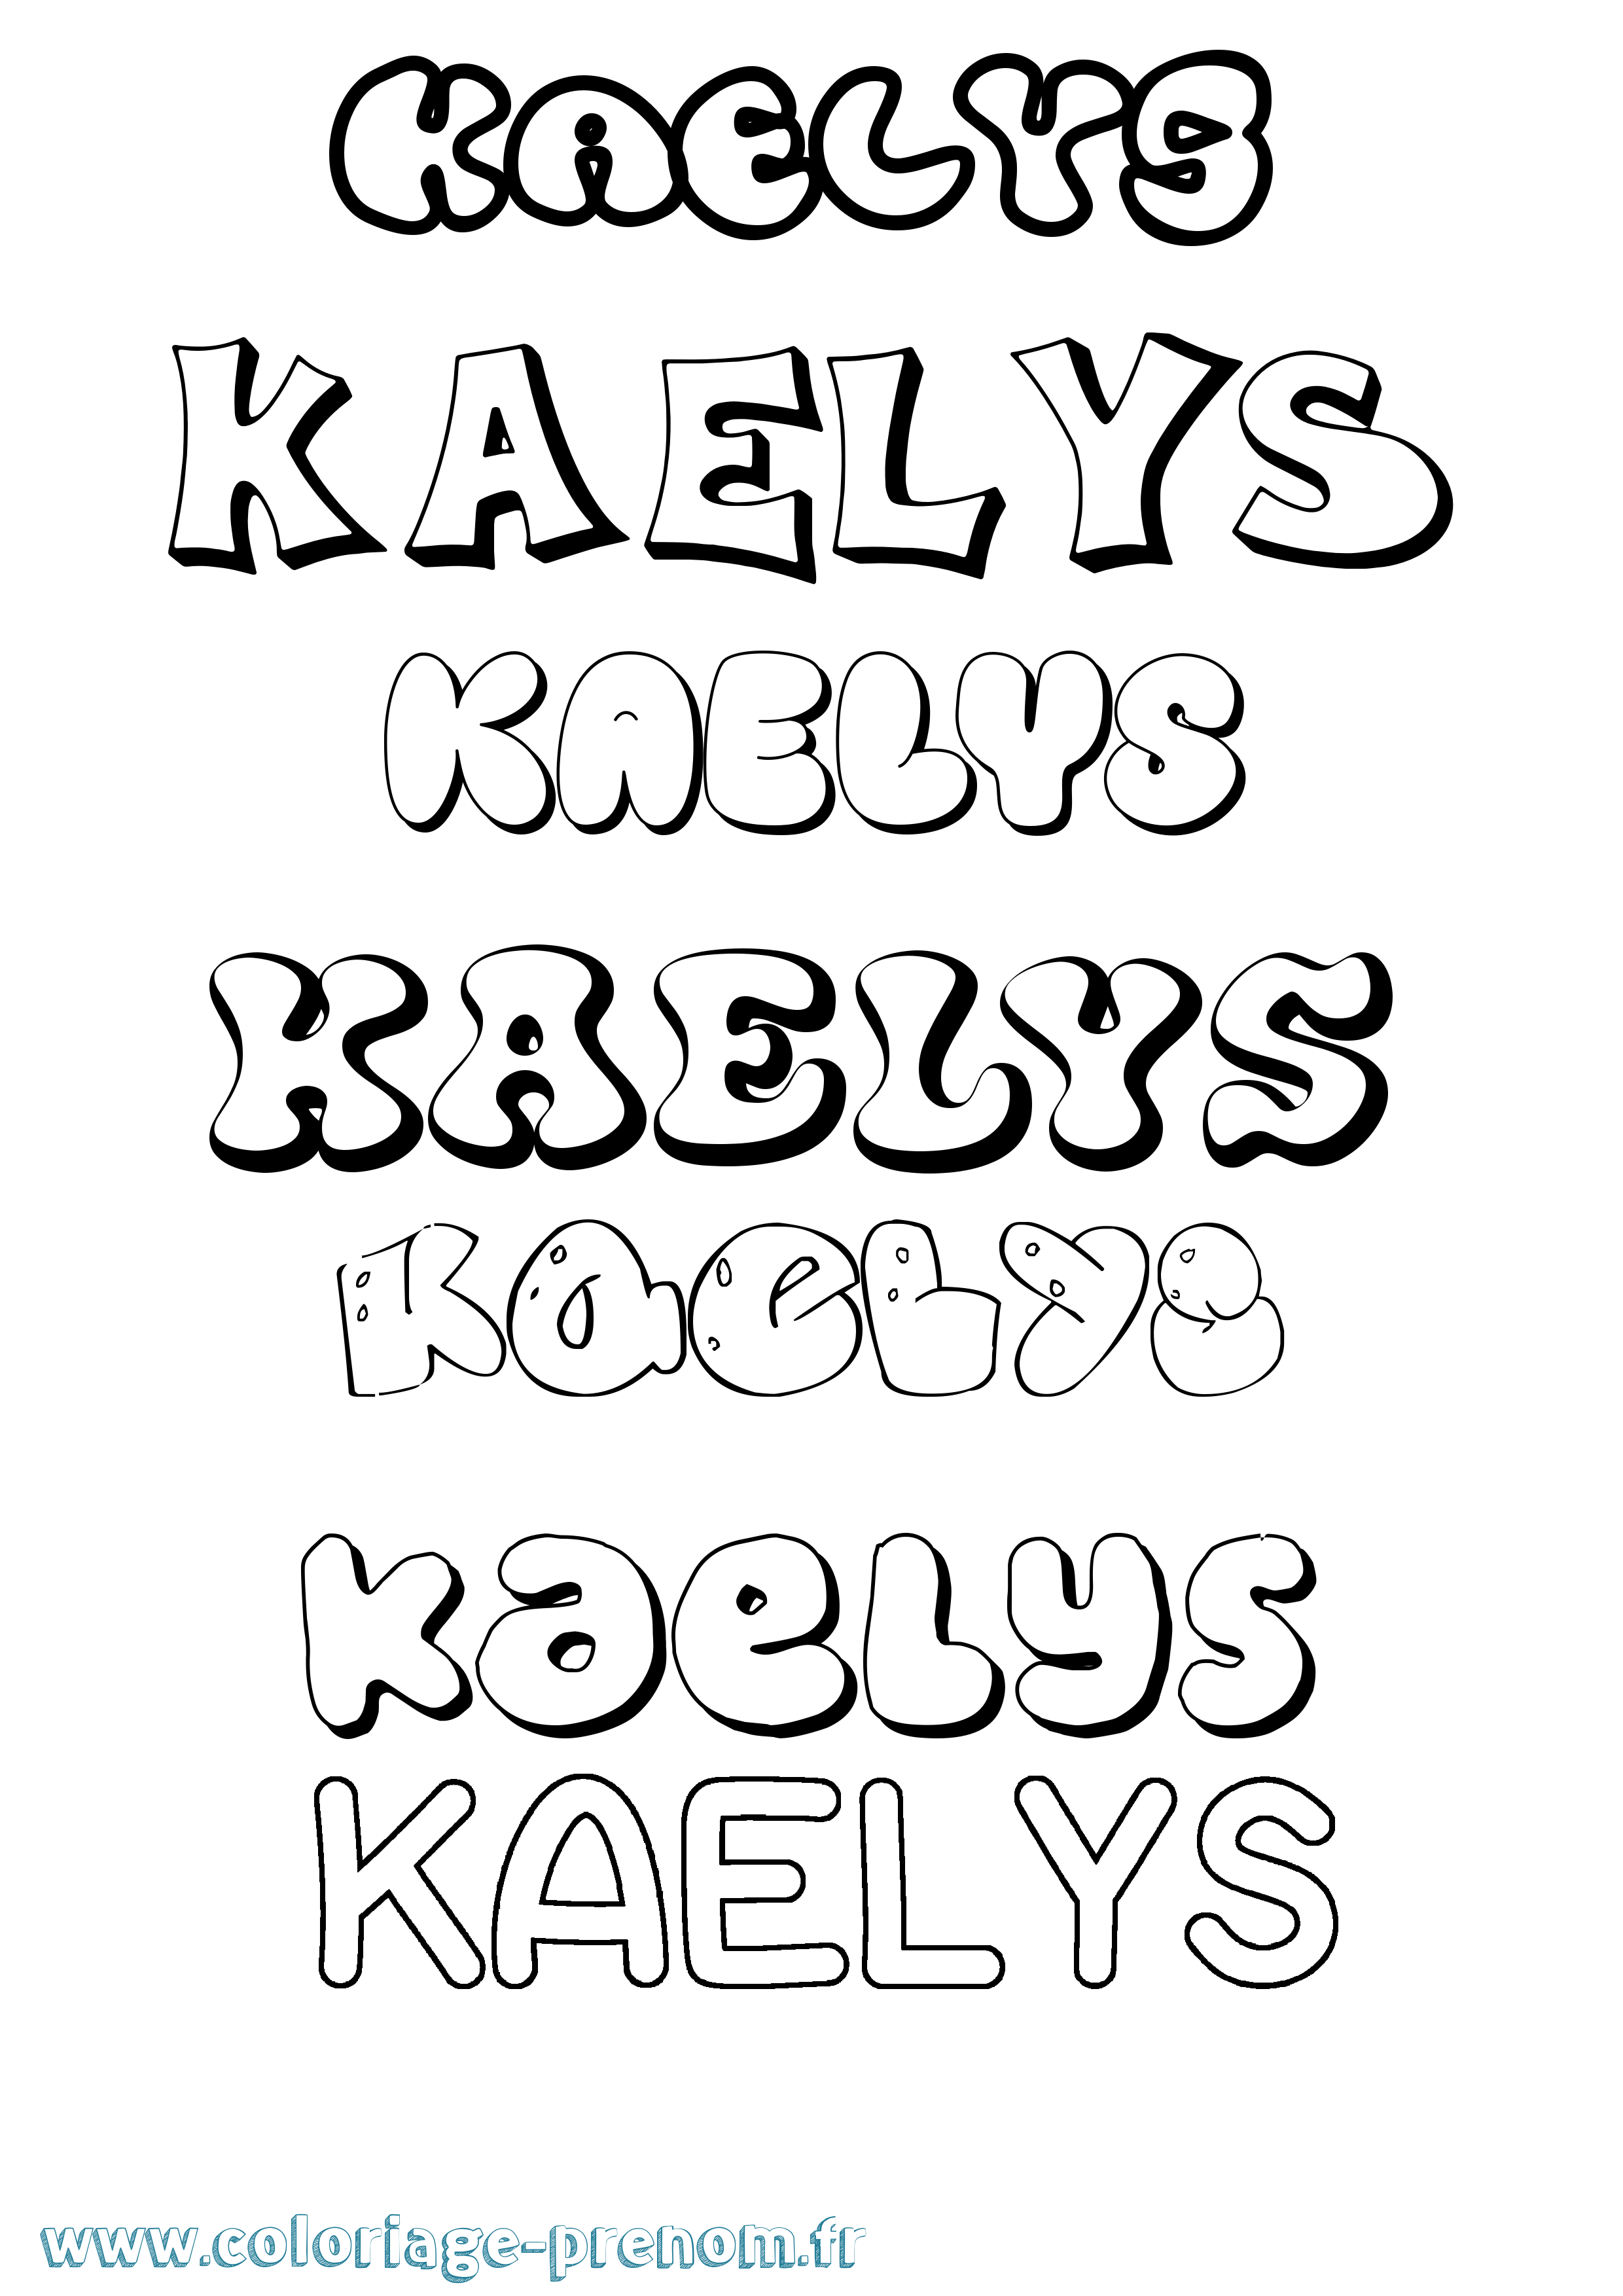 Coloriage prénom Kaelys Bubble